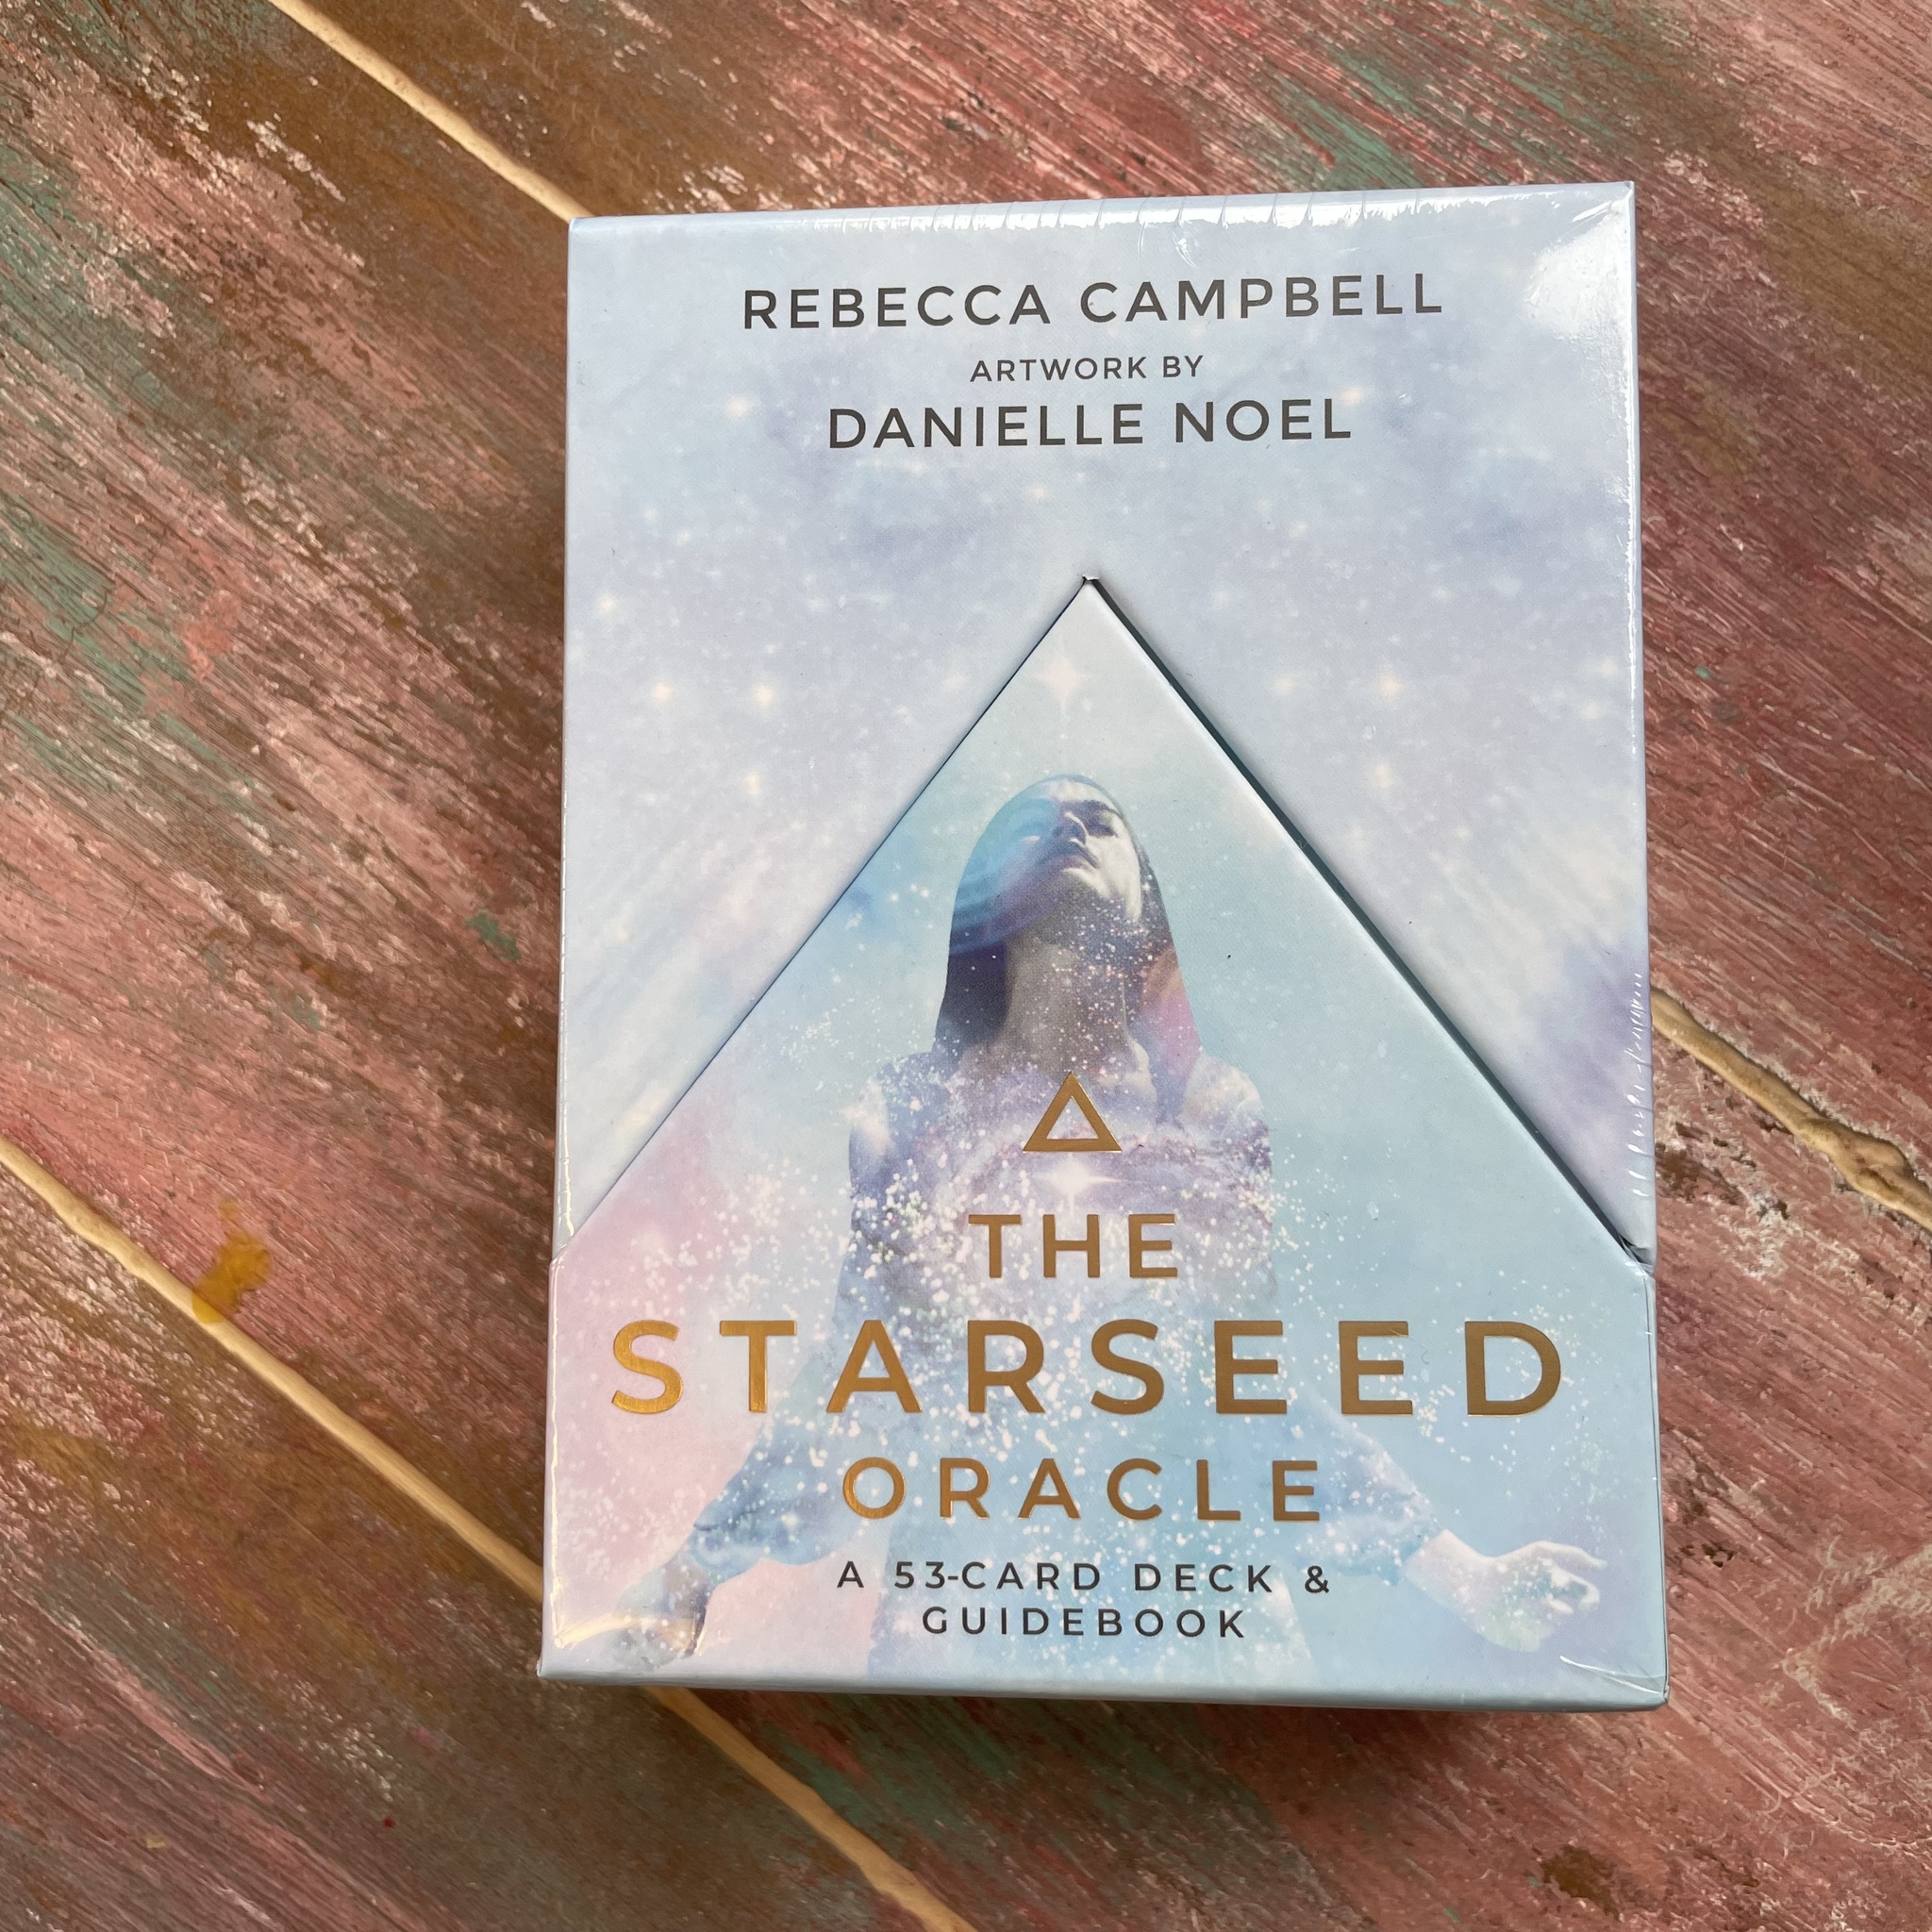 The starspeed oracel